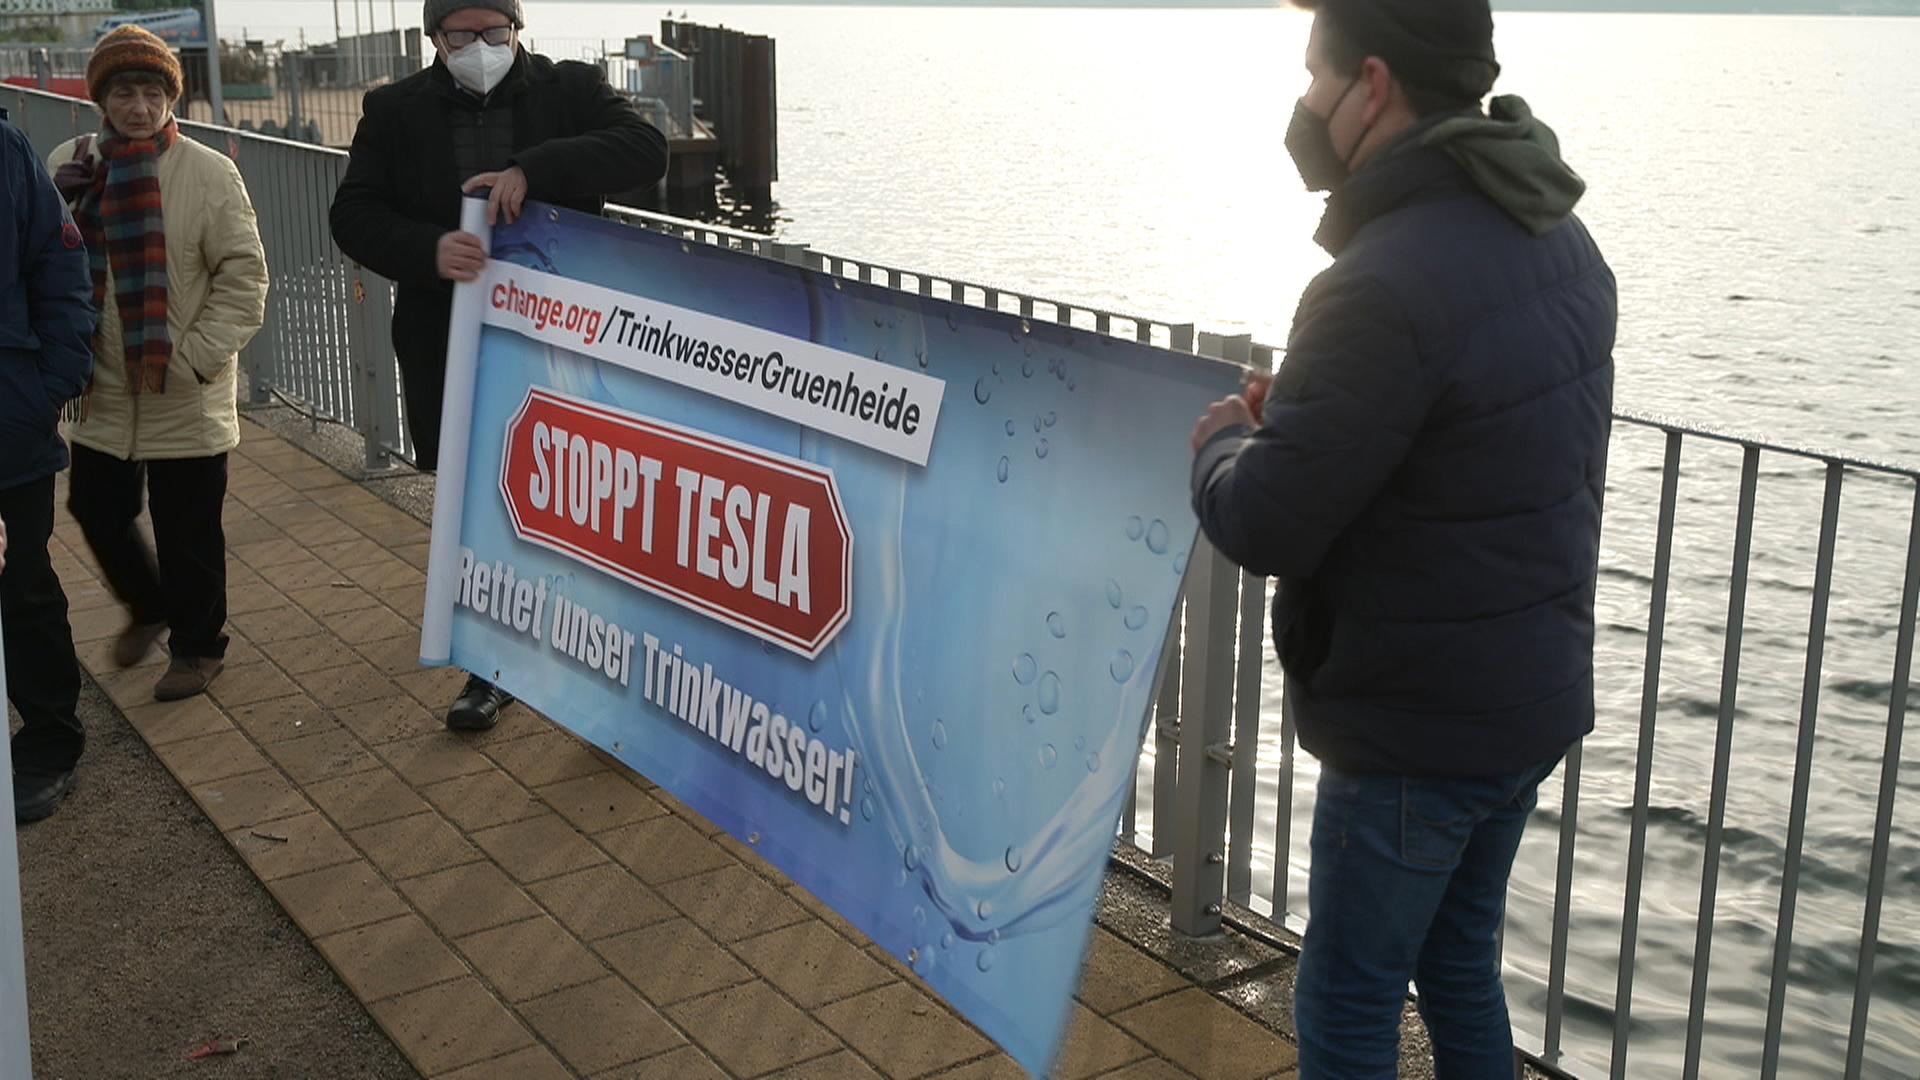 Aktivisten protestieren mit Transparent gegen Tesla-Fabrik: "Stoppt Tesla: Rettet unser Trinkwasser" 